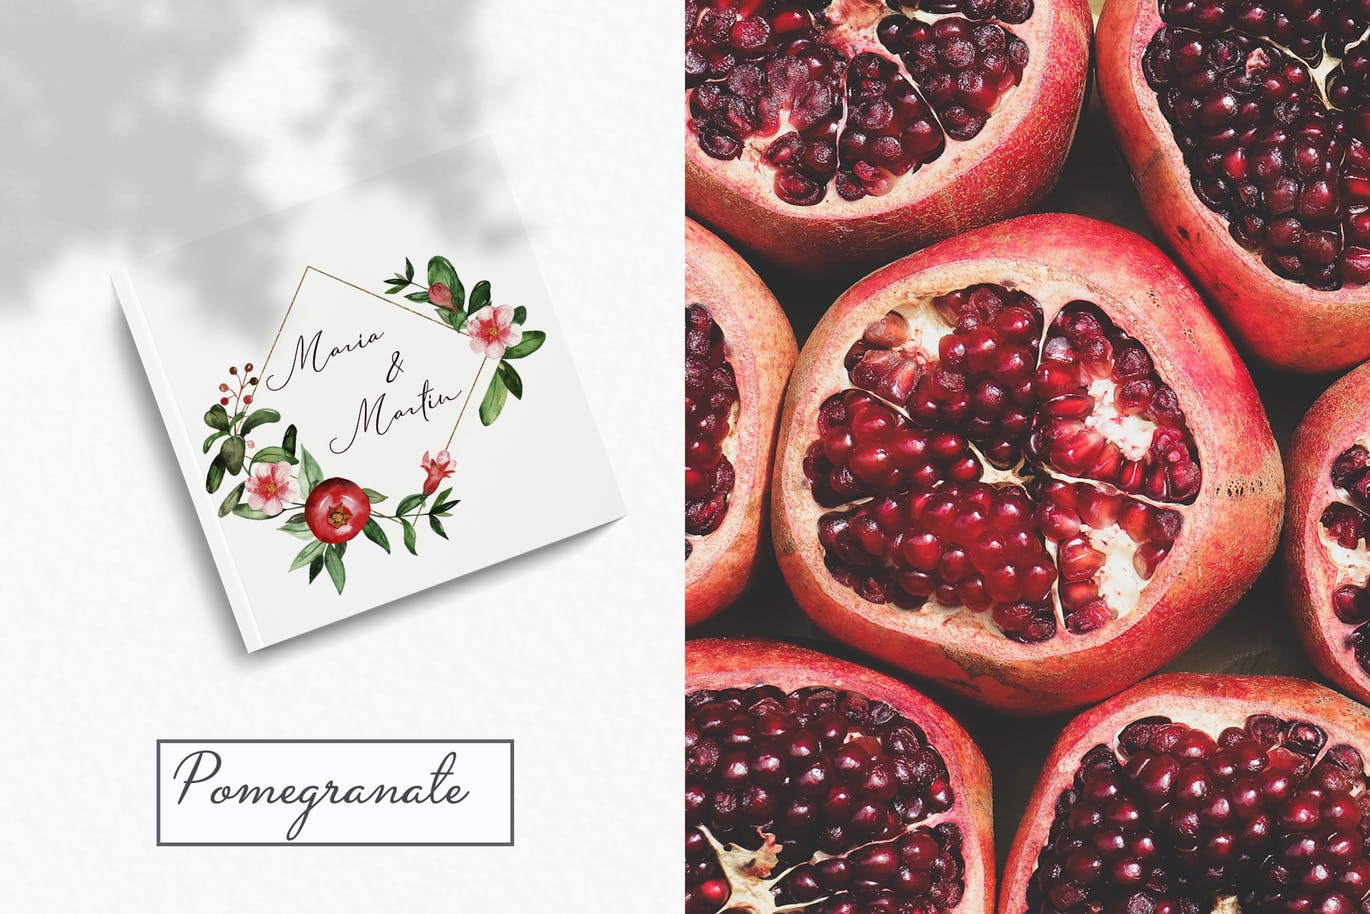 水彩石榴剪贴画/花框/花环第一素材精选设计素材 Watercolor pomegranate. Clipart, frames, wreaths插图(9)